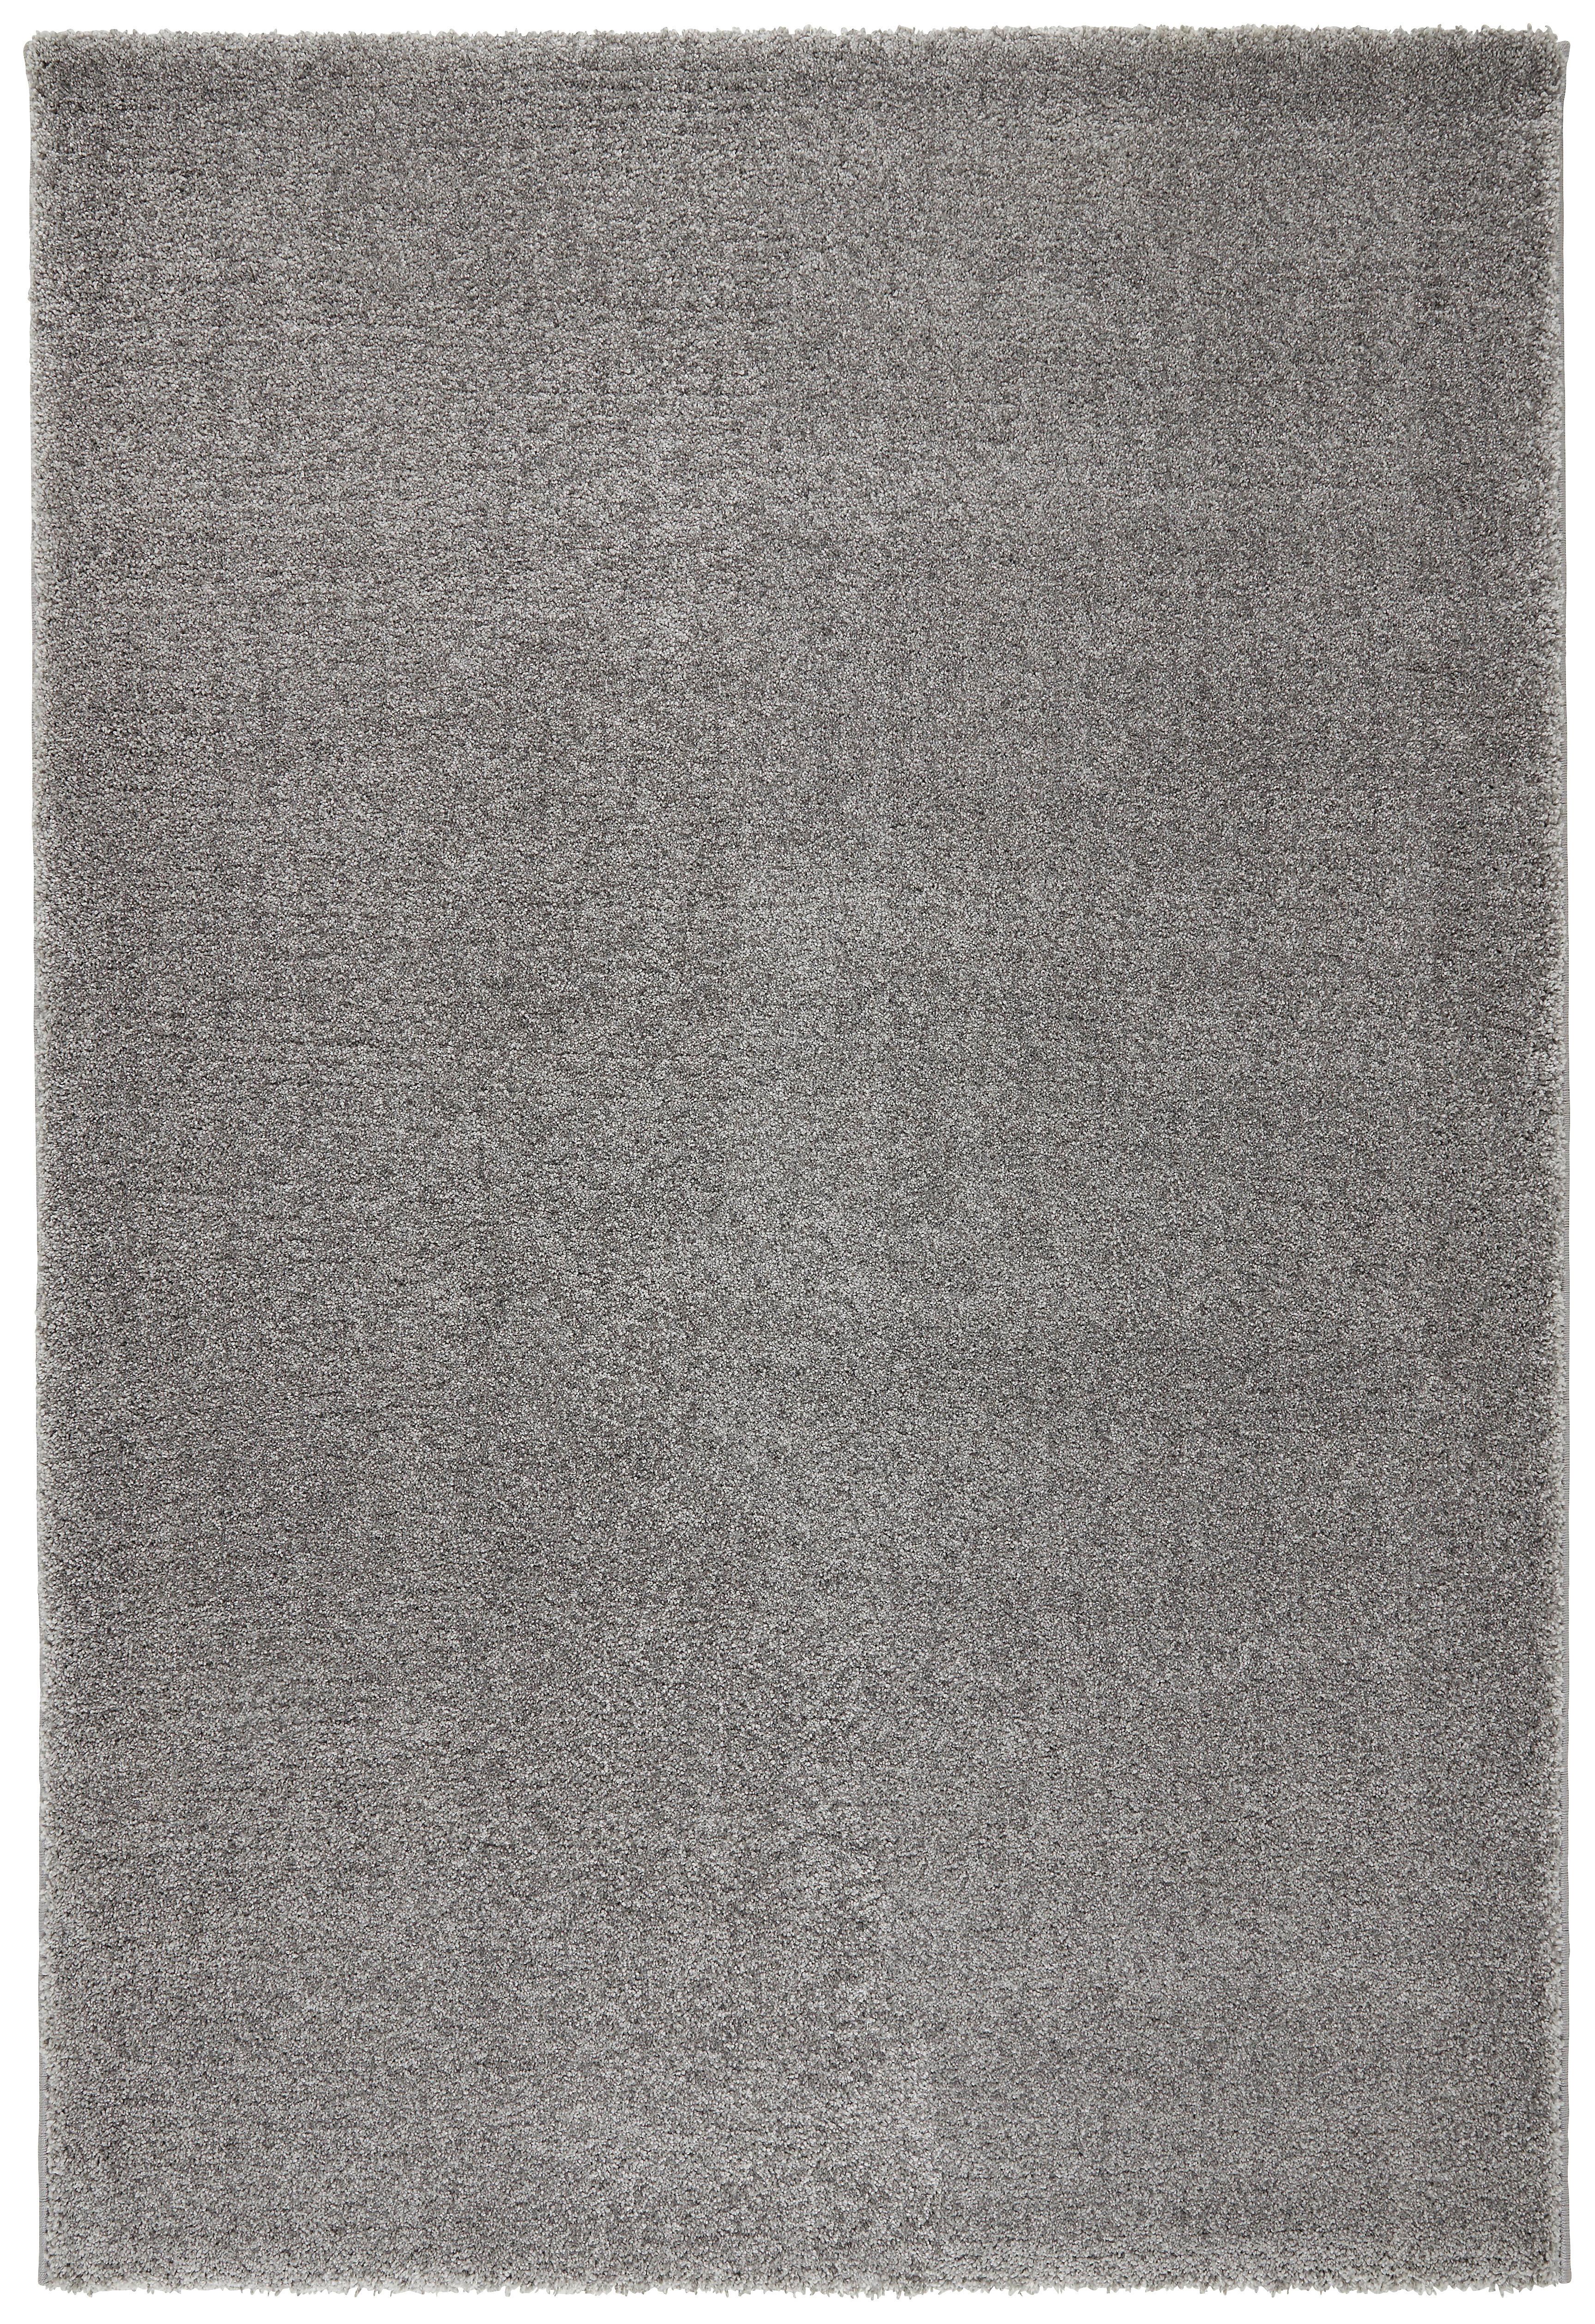 Webteppich Rubin ca. 80x150cm - Hellgrau, MODERN (80/150cm) - Modern Living